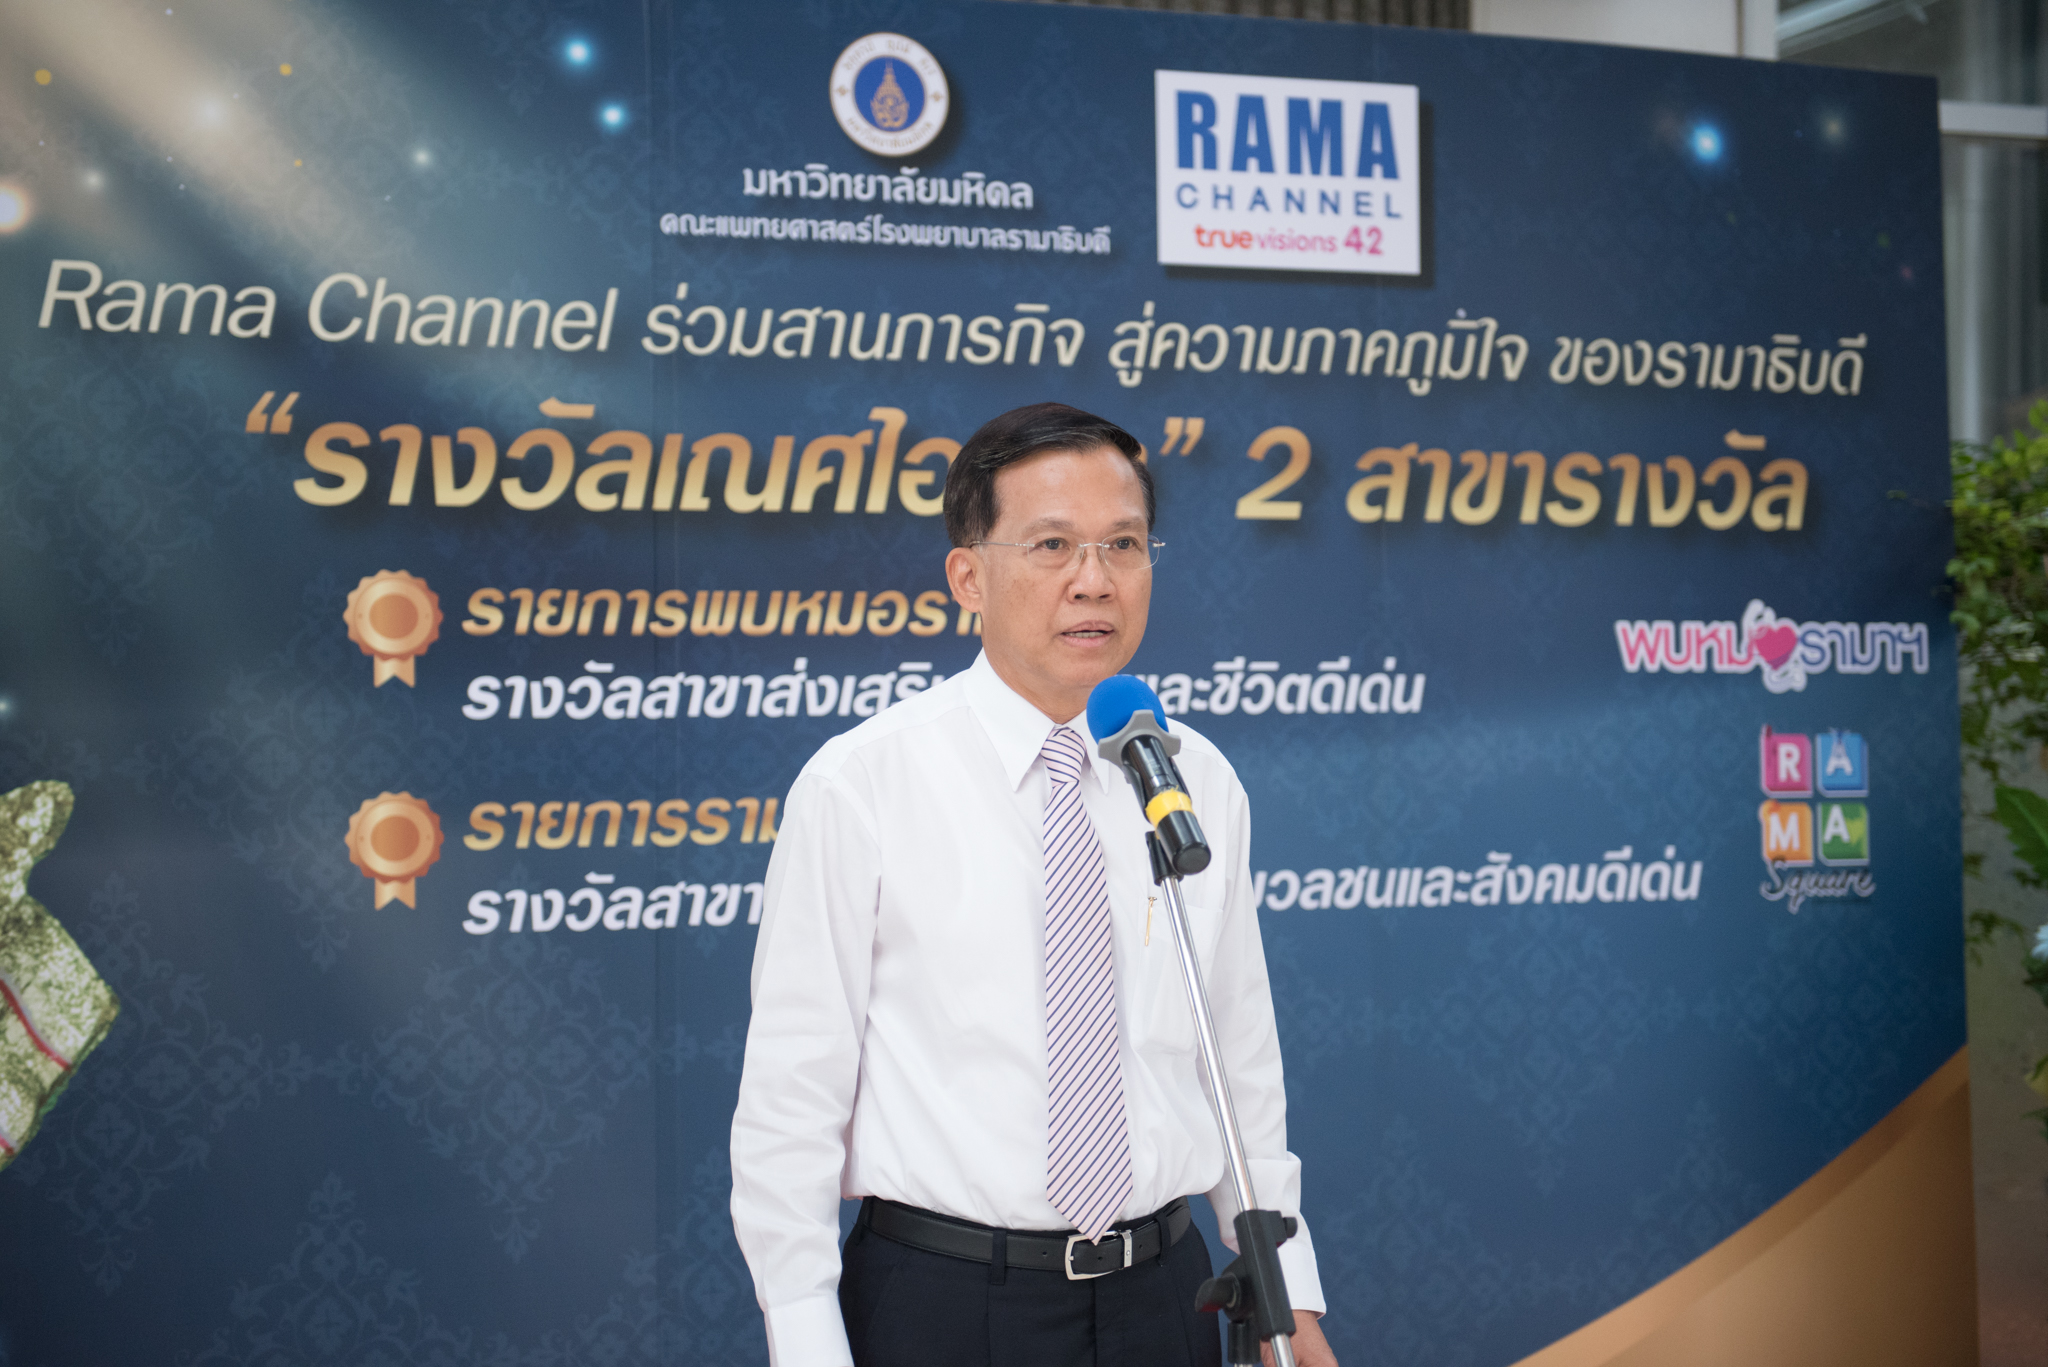 งานแสดงความยินดี ในโอกาส สถานีโทรทัศน์ RAMA CHANNEL ได้รับรางวัล “เณศไอยรา” ประจำปี 2562